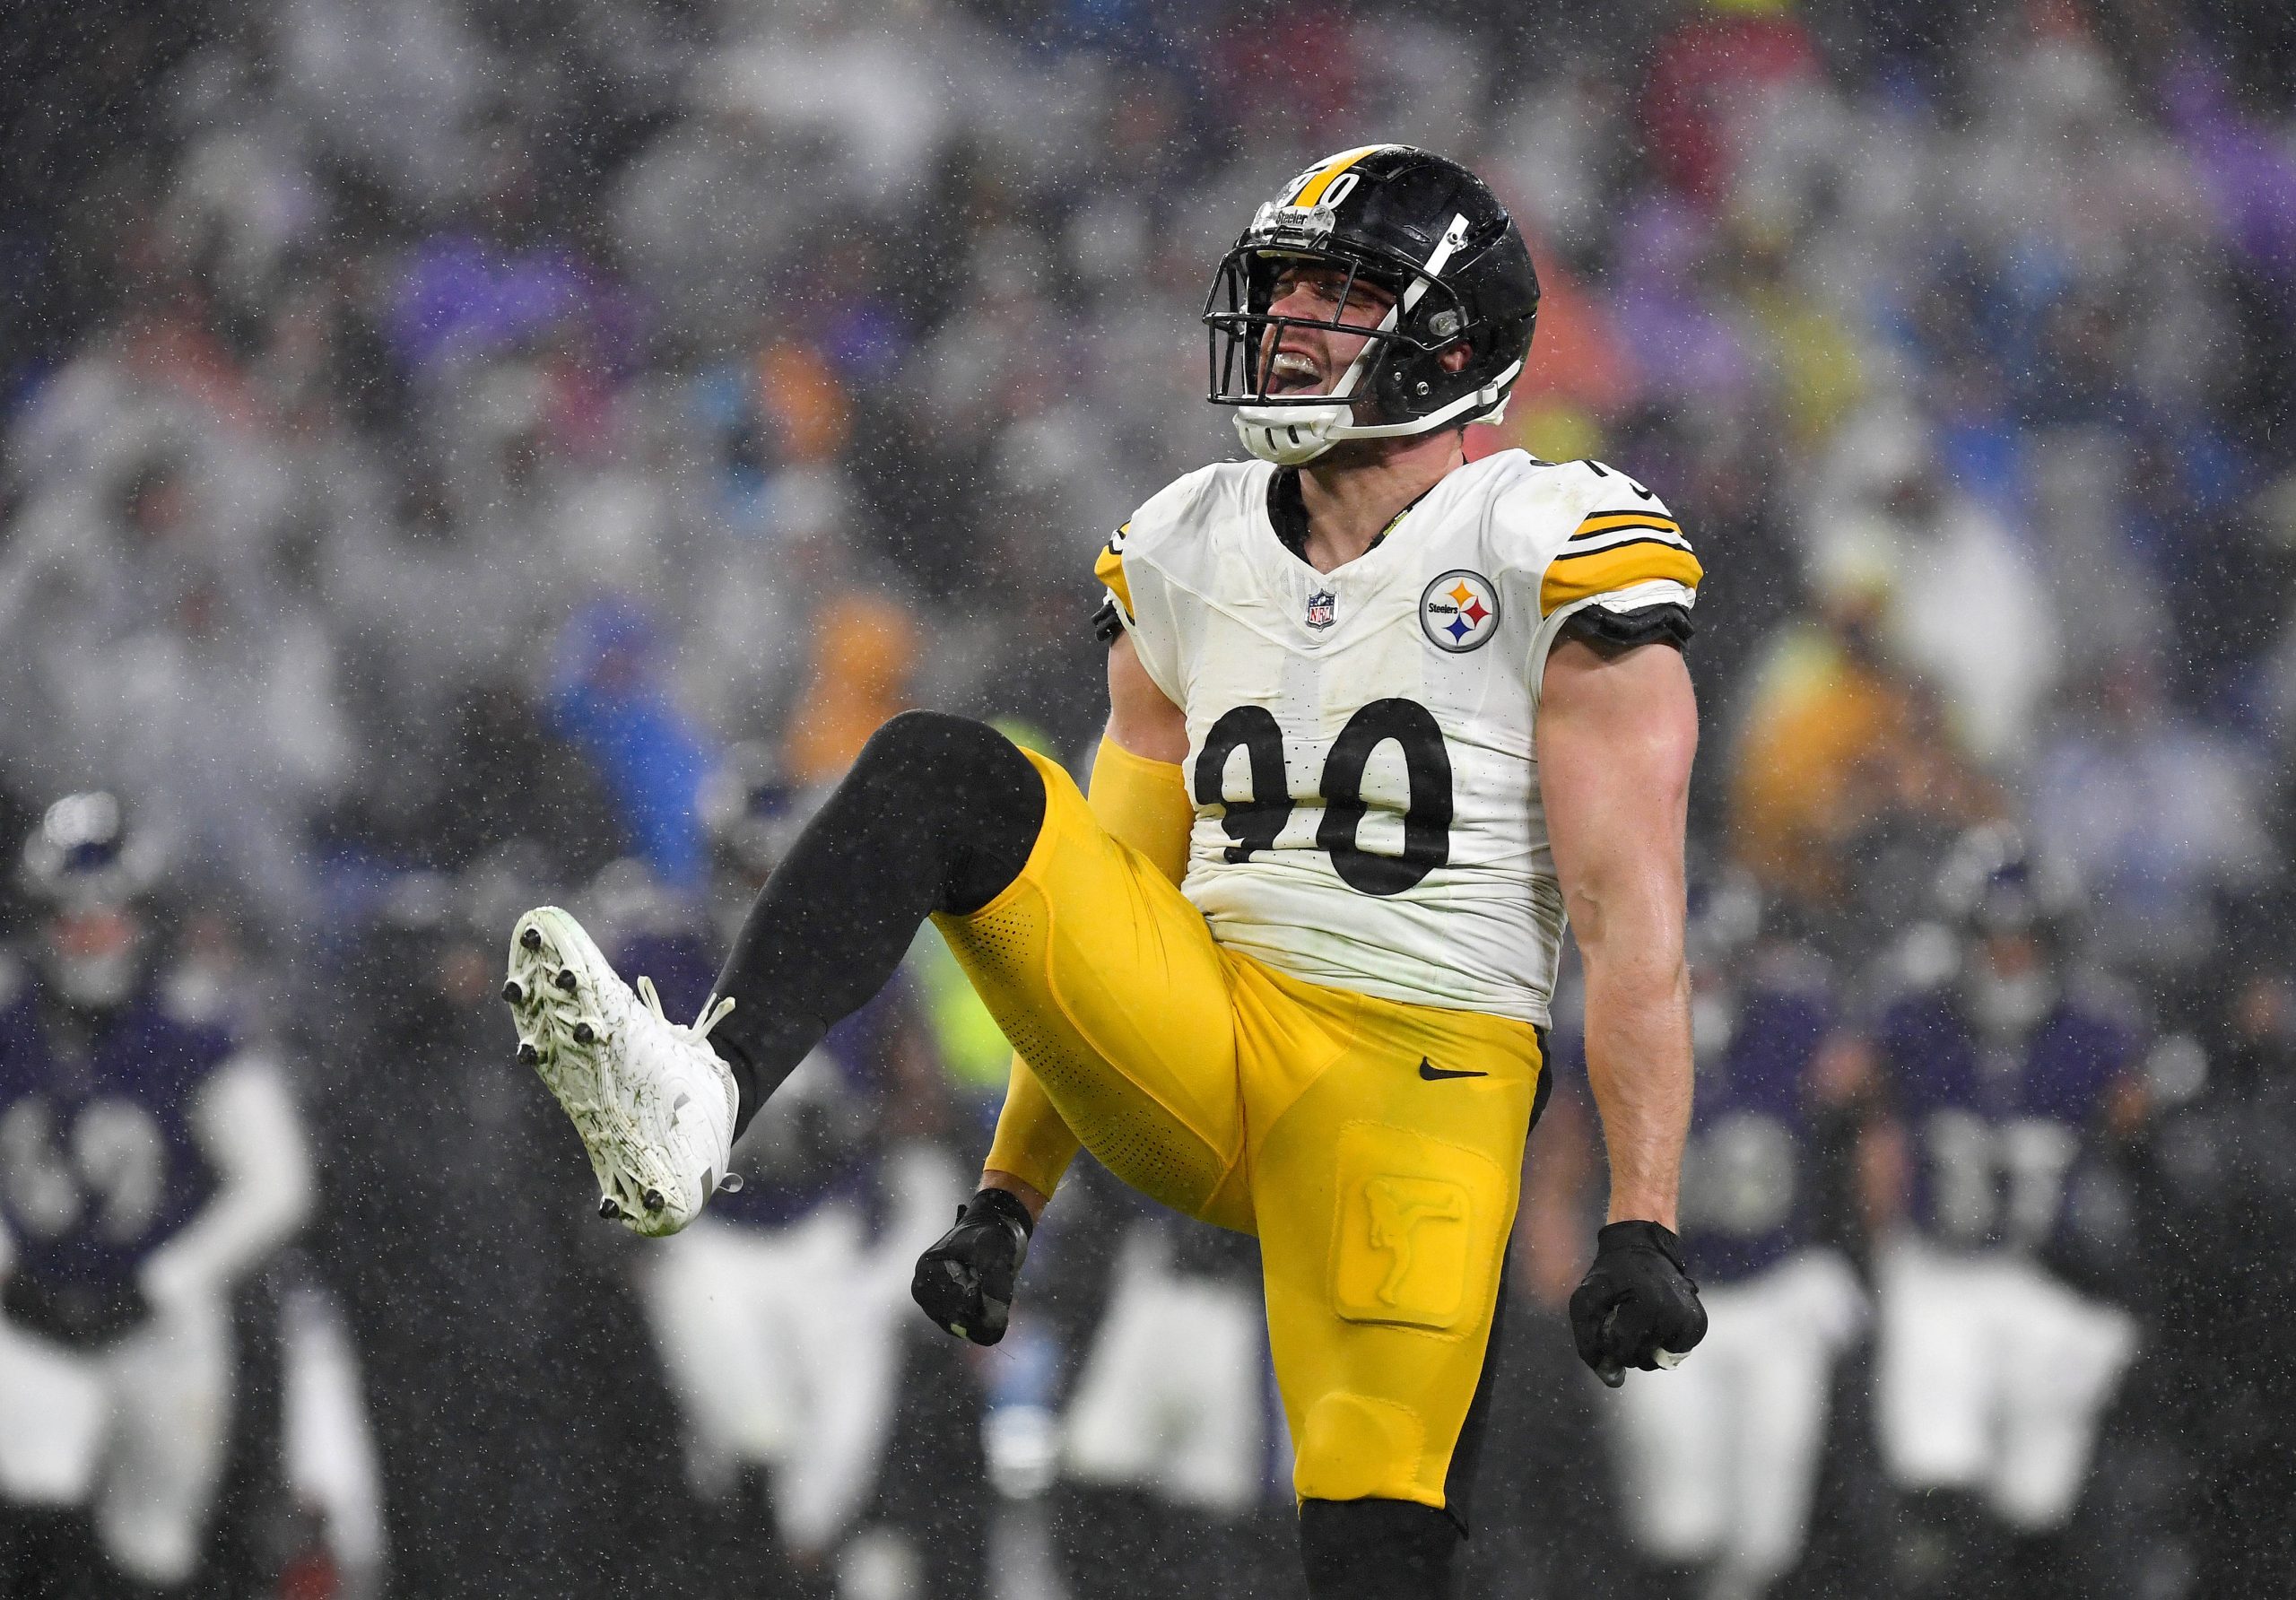 FootballR - NFL - T.J. Watt, ein Footballspieler der Pittsburgh Steelers, feiert einen Sack im Regen.